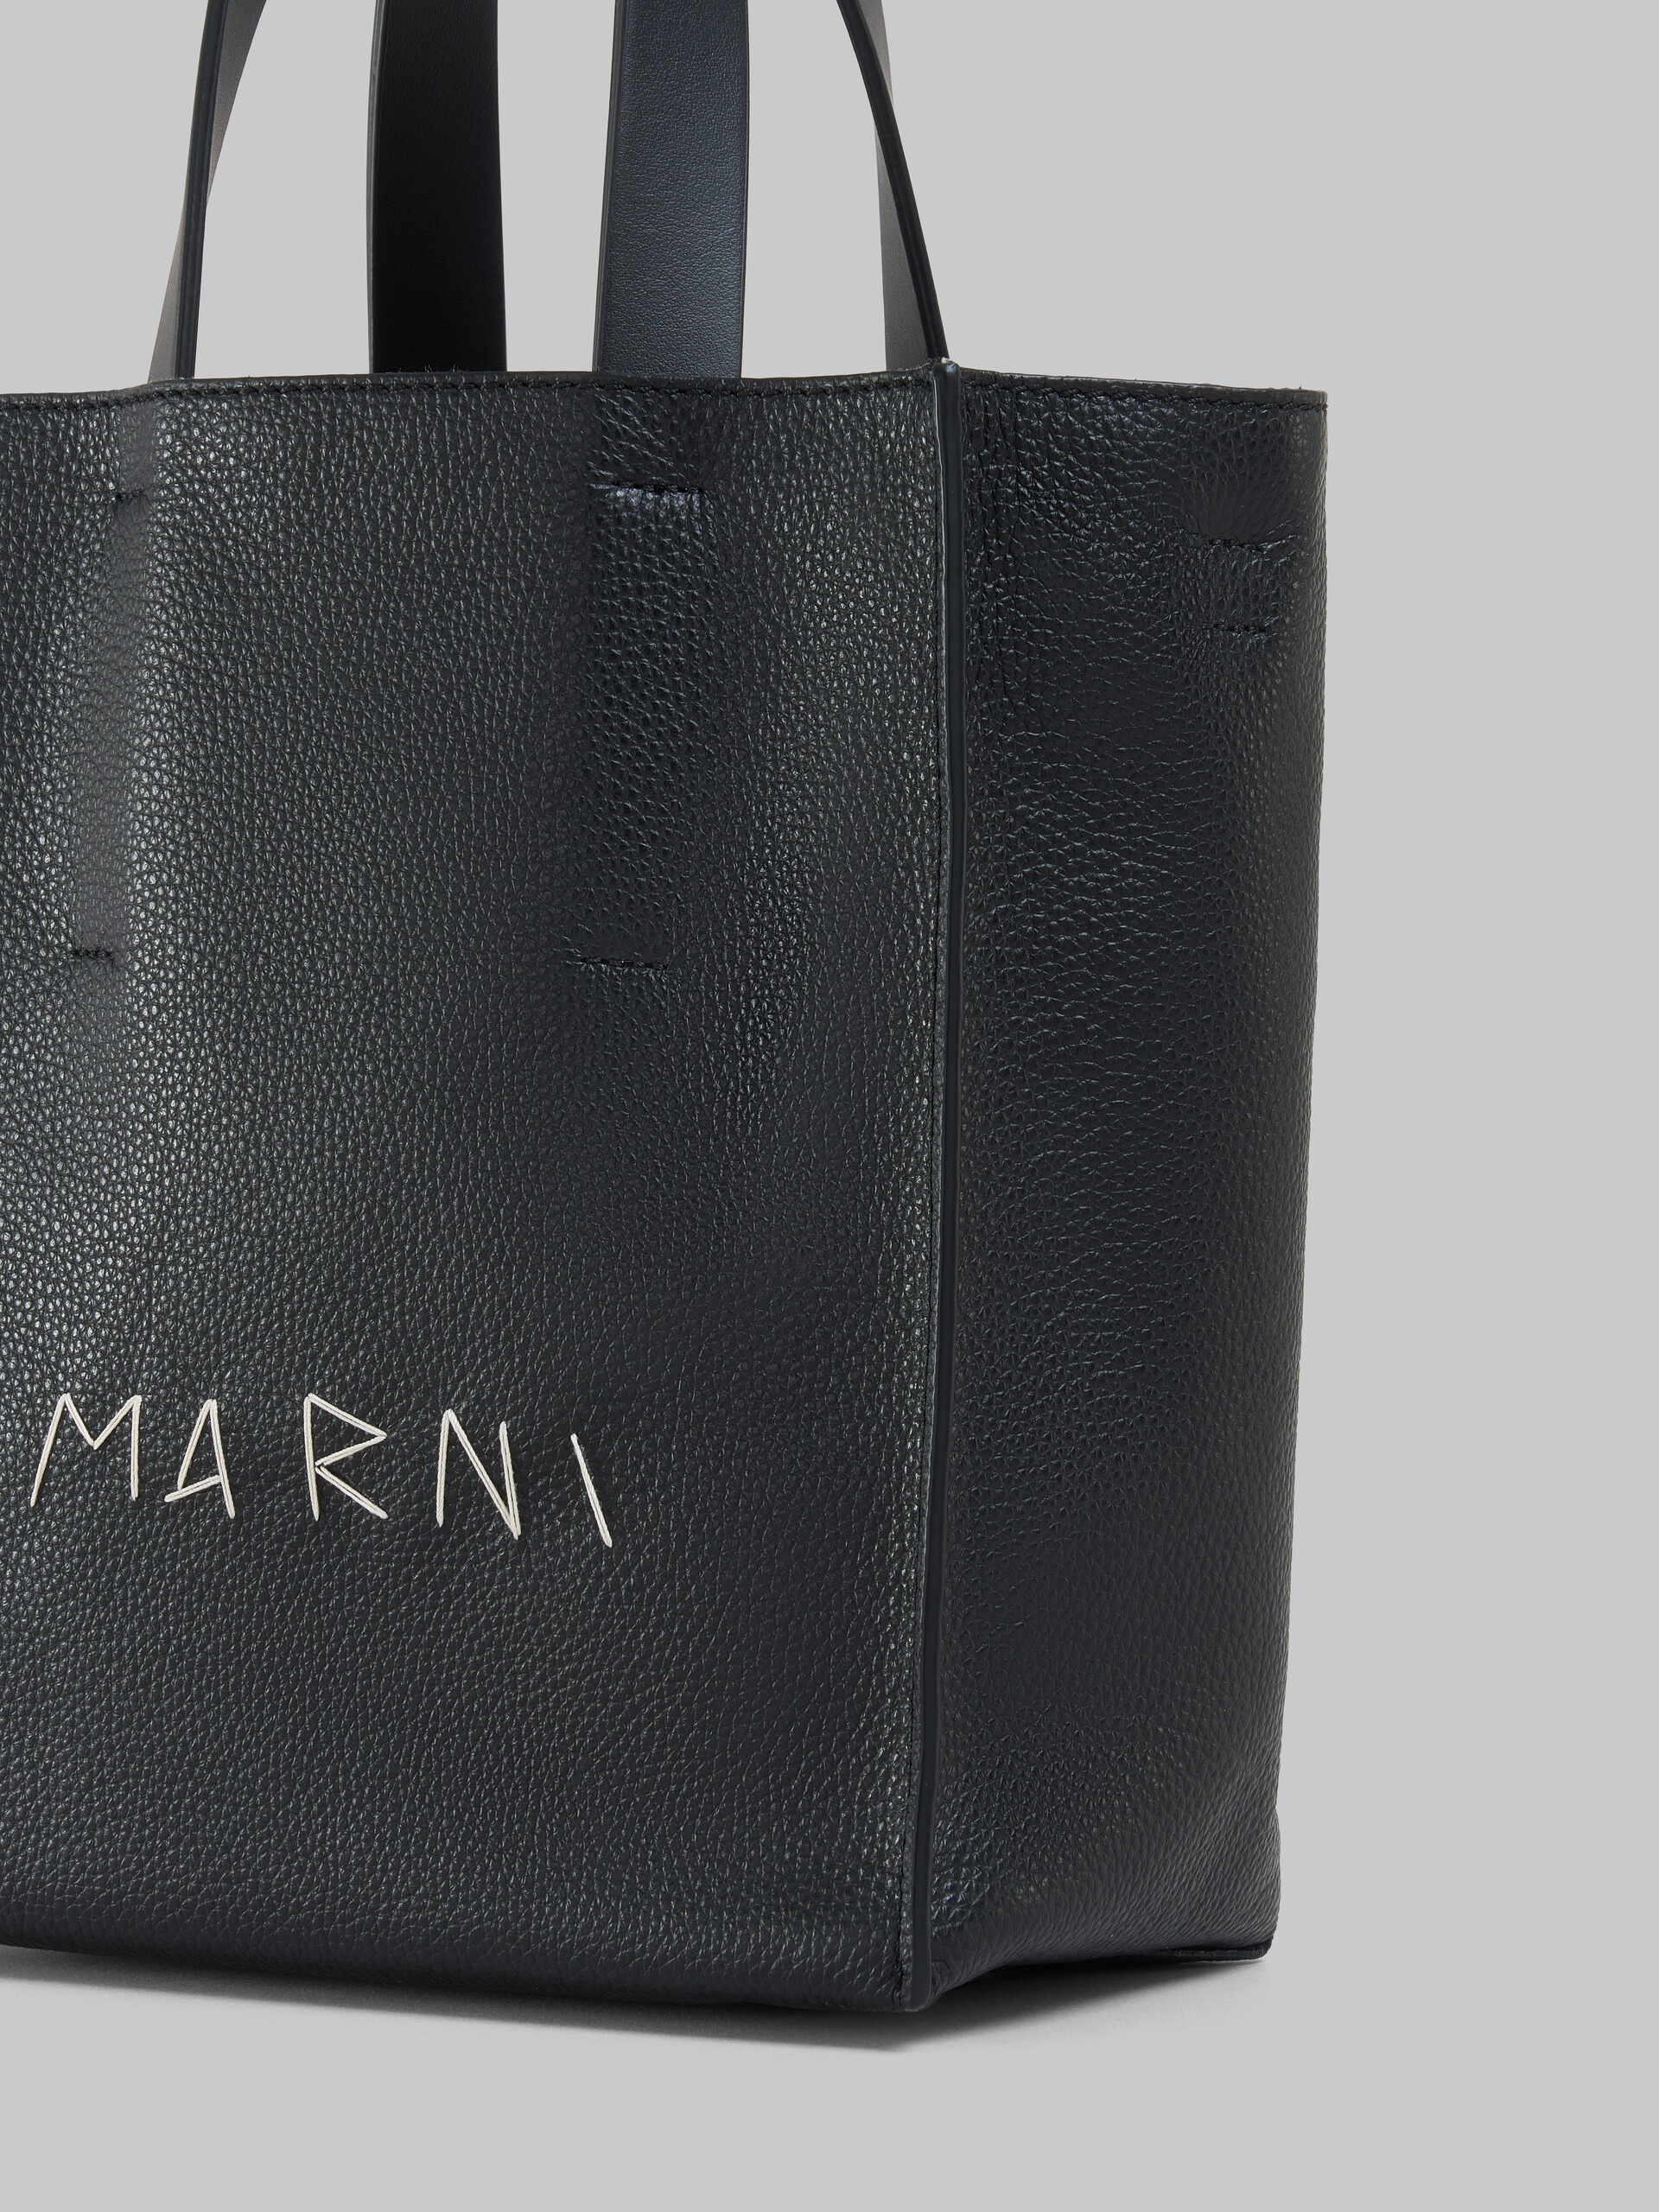 Museo Soft bag Mini in pelle bianca e marrone con impunture Marni - Borse shopping - Image 5